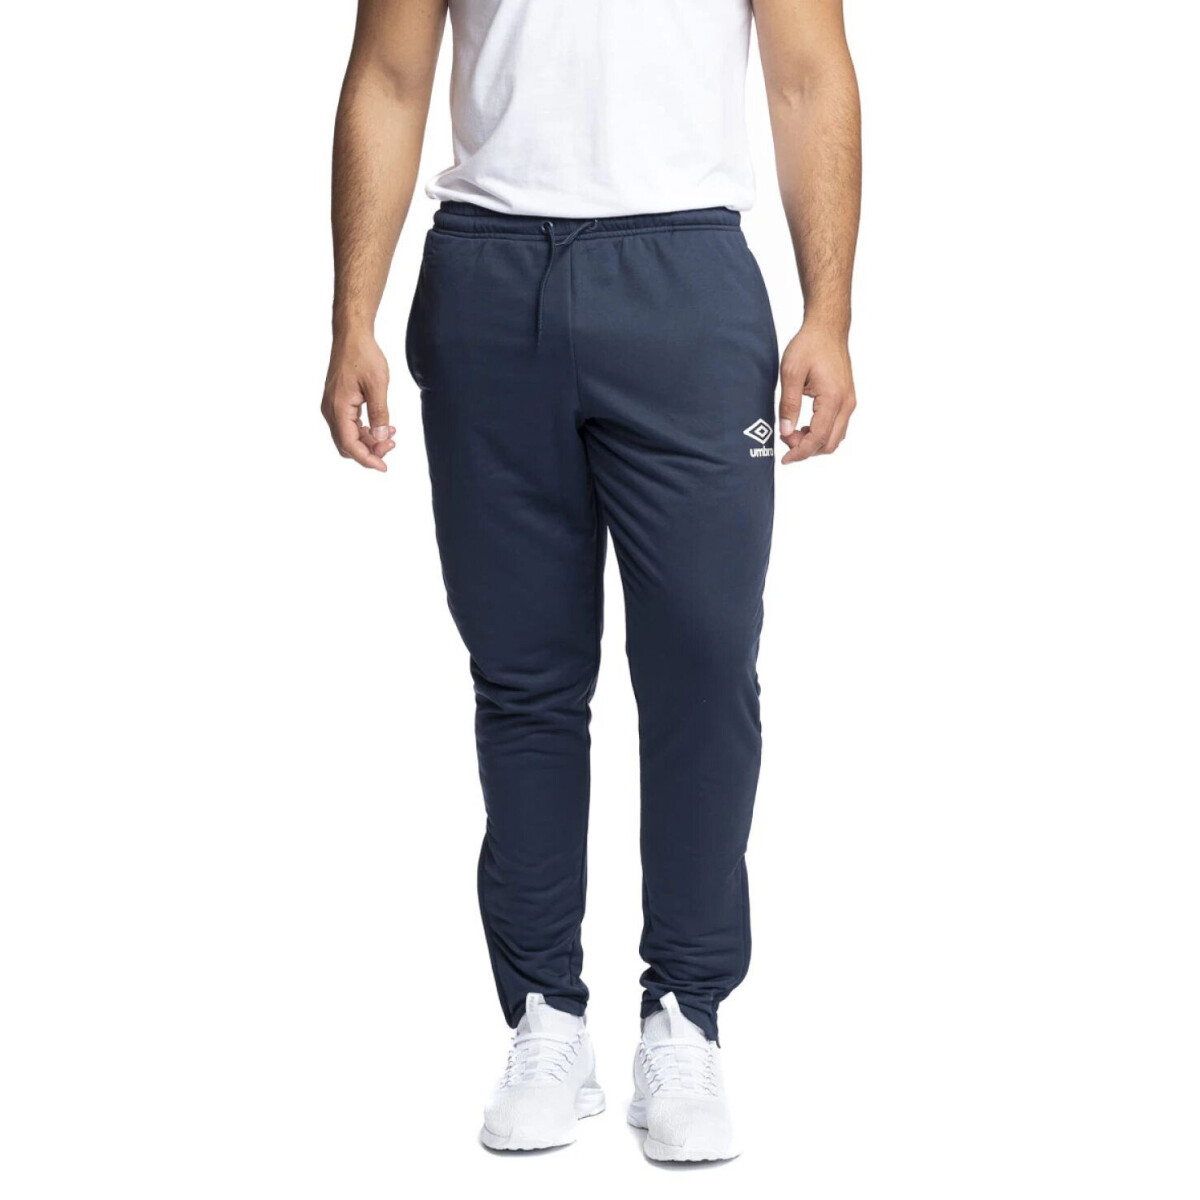 Pantalon de Hombre Umbro Tecnologico - Azul Marino - Blanco 